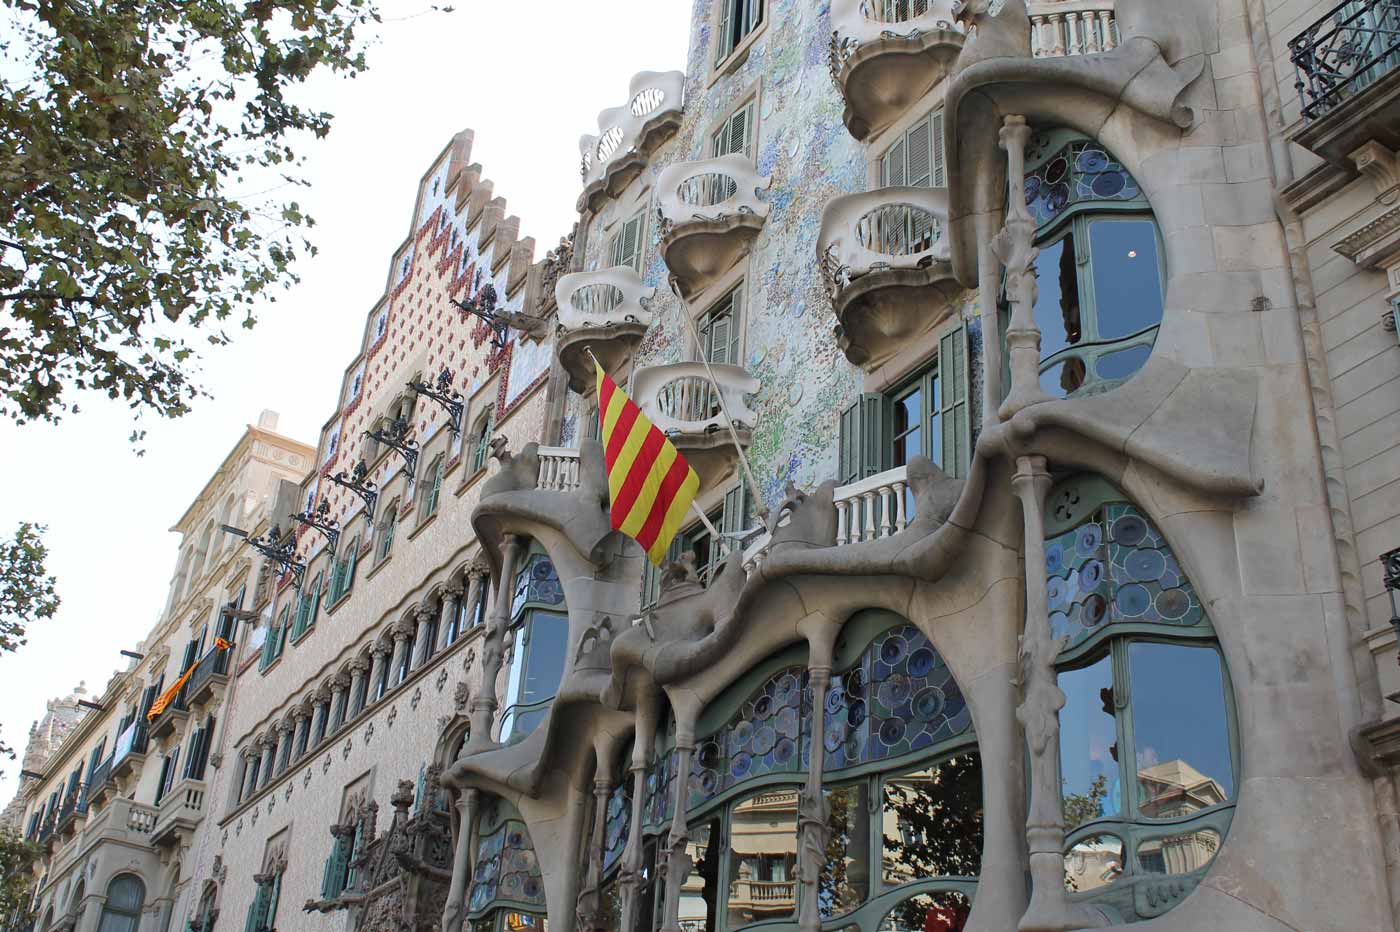 Casa Milà pontos turísticos de Barcelona